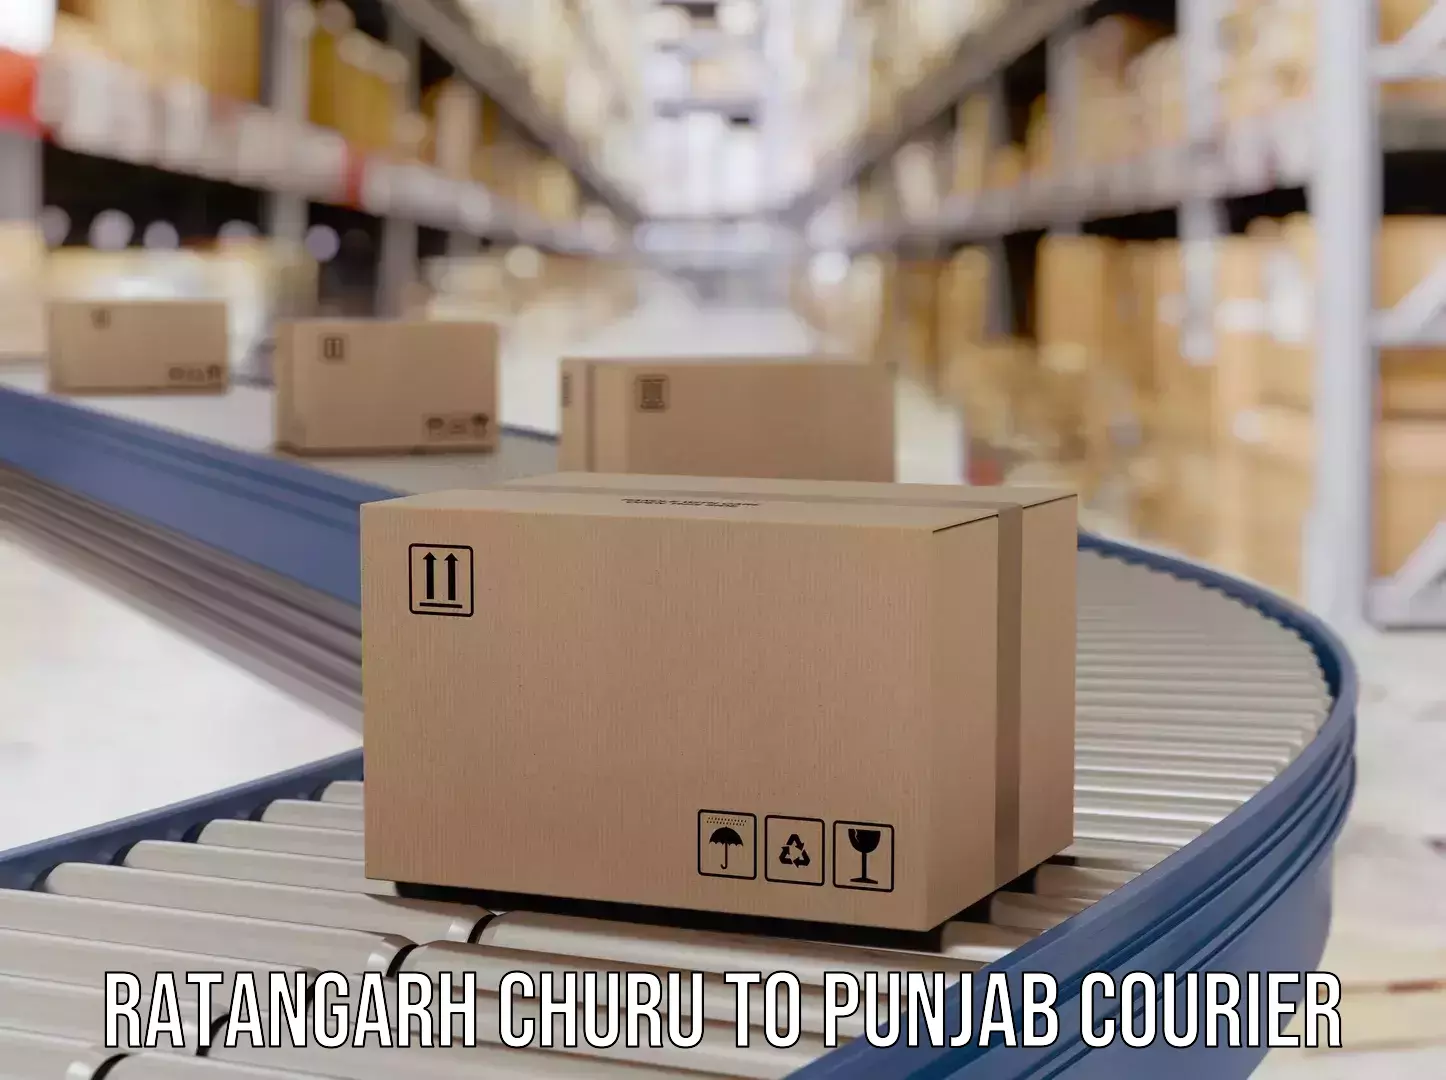 Customer-focused courier Ratangarh Churu to Nawanshahr